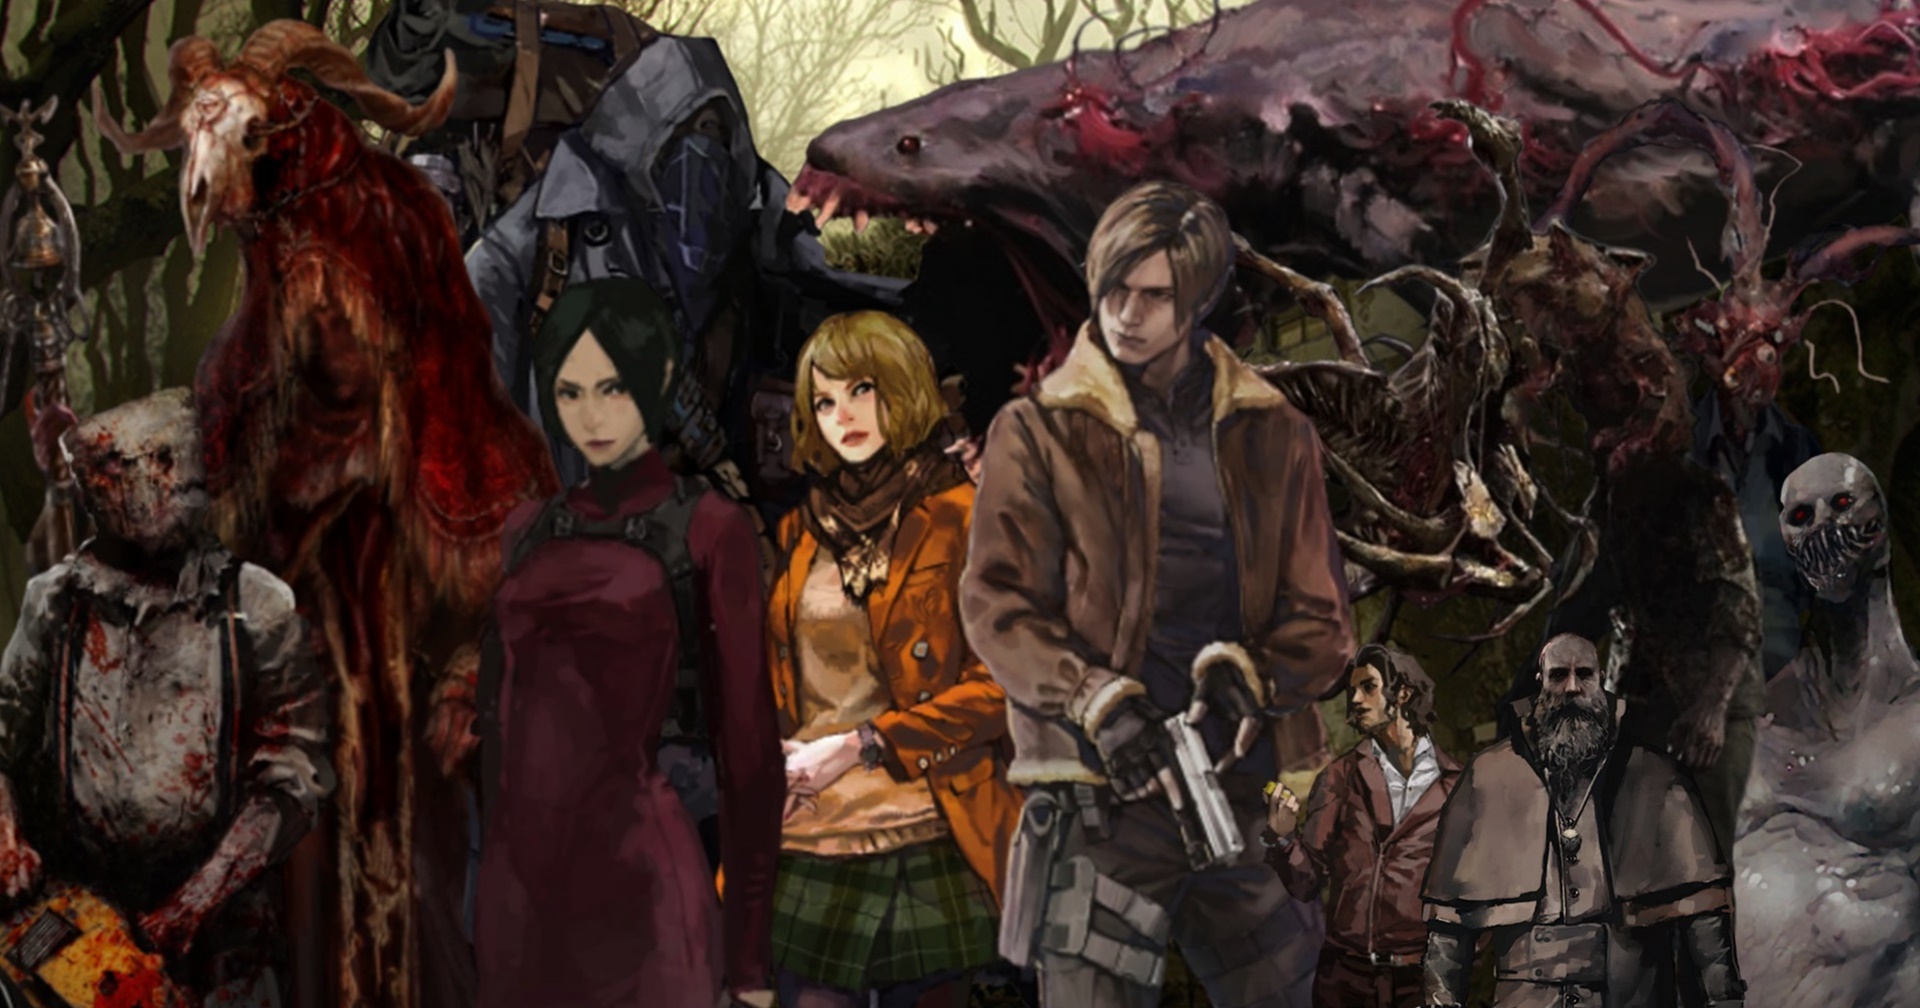 แนะนำเคล็ดลับวิธีเล่น Resident Evil 4 Remake ให้ผ่านสำหรับมือใหม่ที่กำลังหัวร้อนตอนนี้